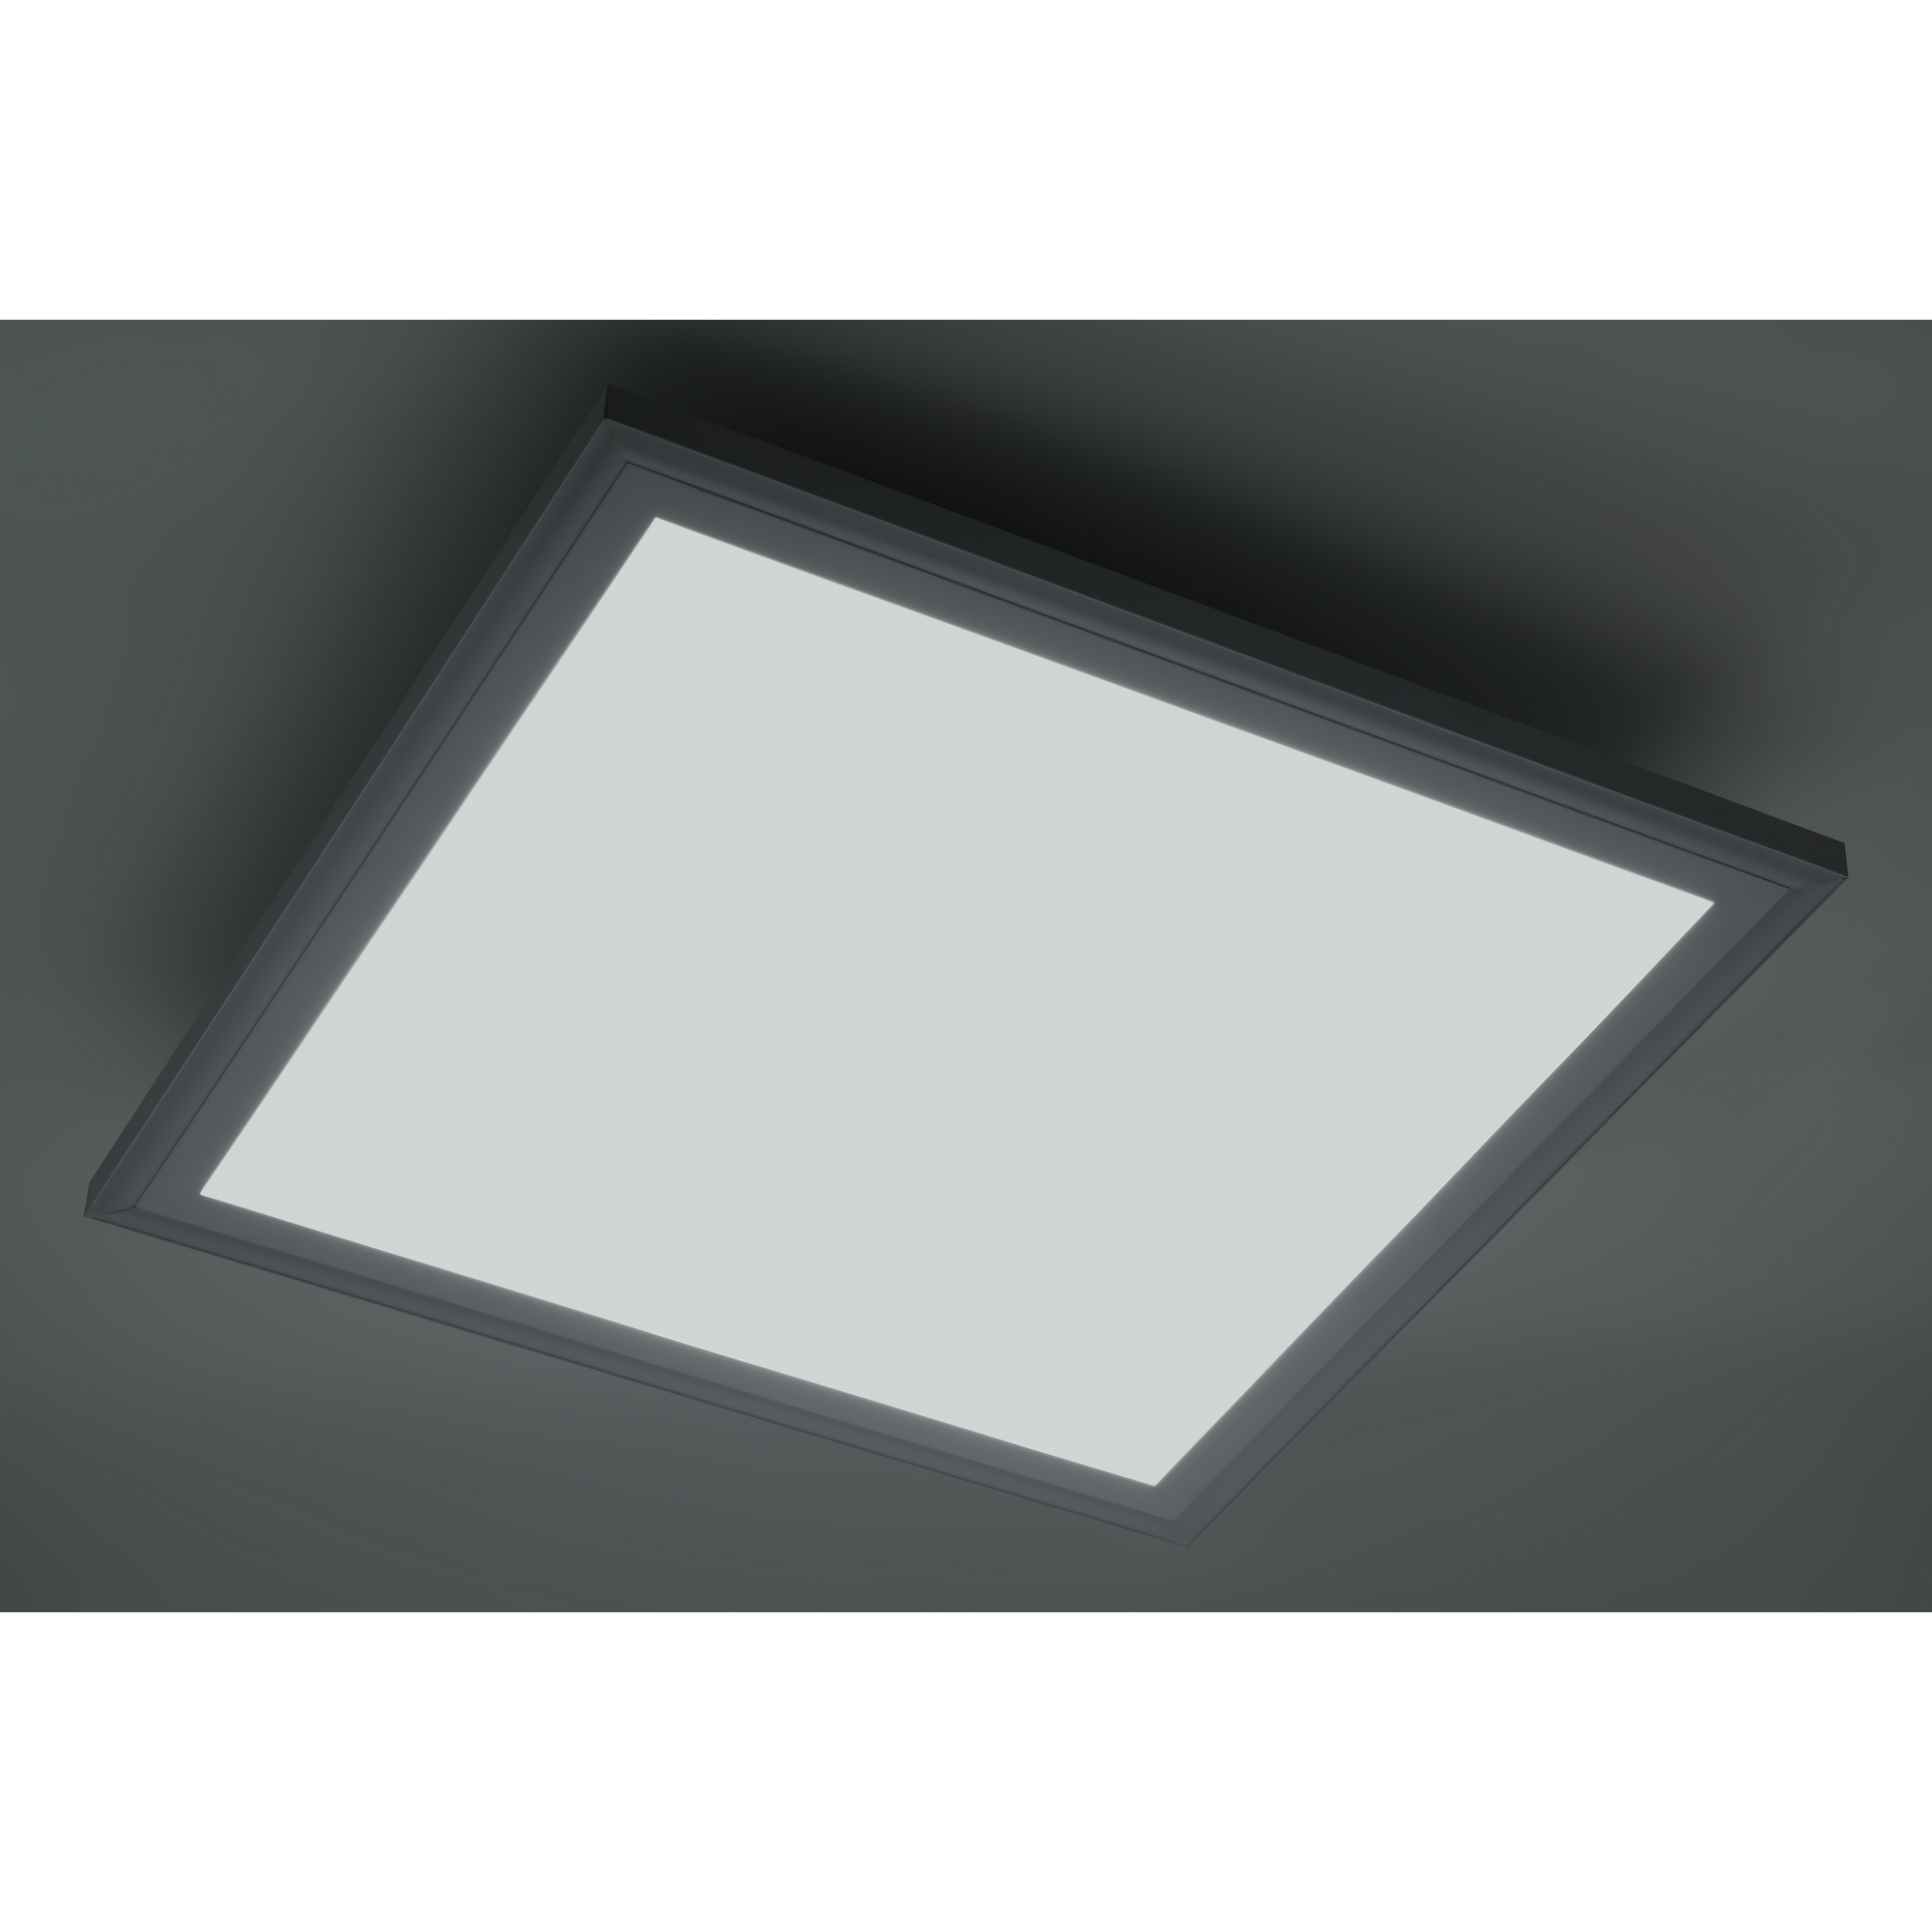 LED-Panelleuchte 47 x 47 x 7,5 cm 2400 lm + product picture